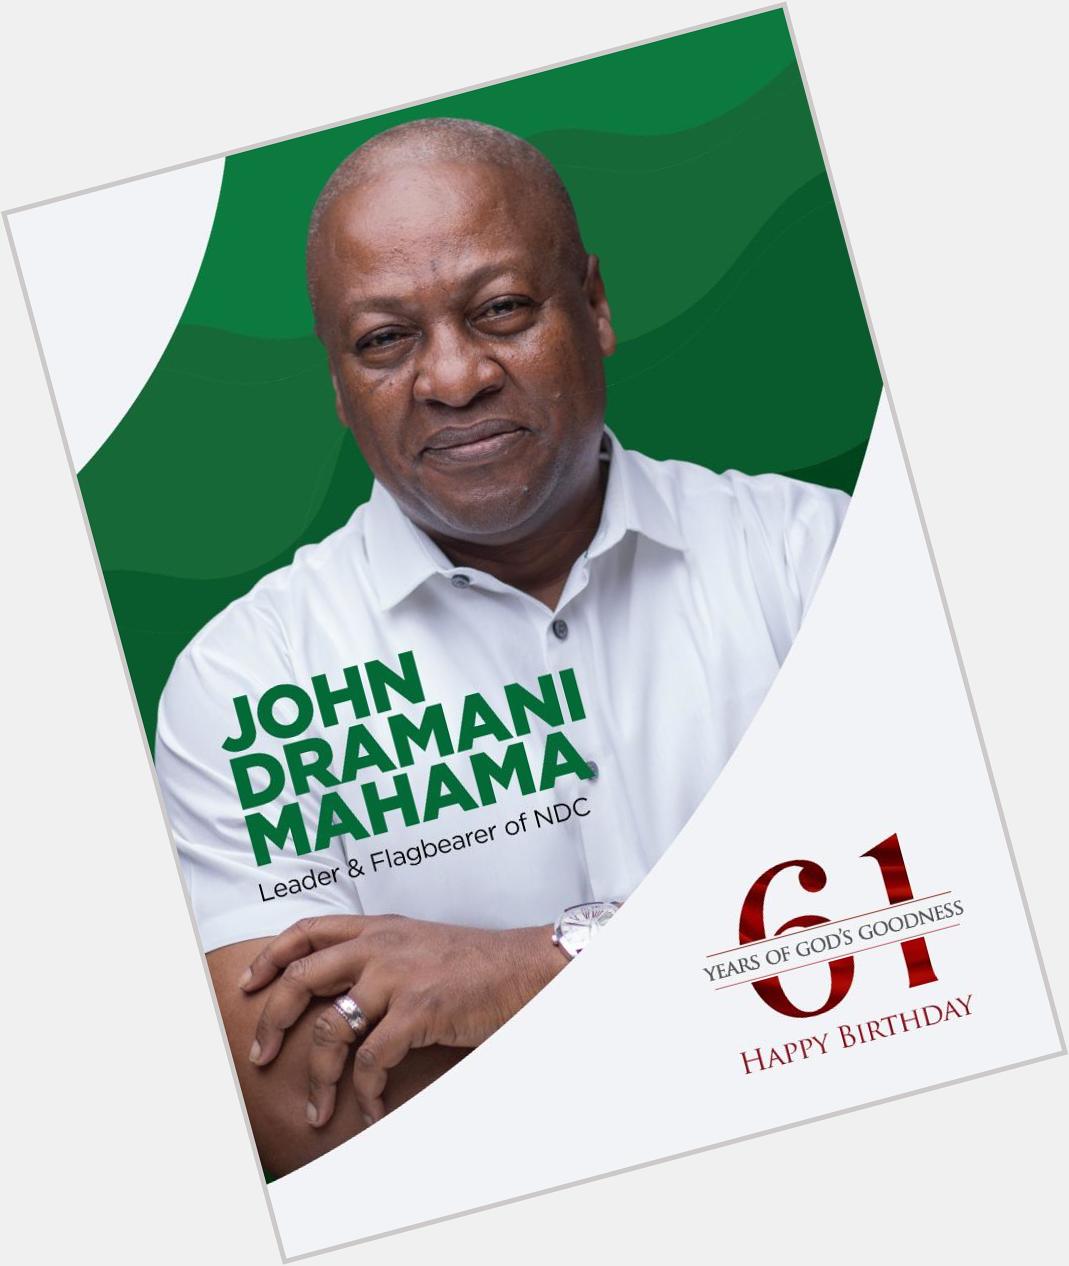 Happy Birthday Your Excellency John Dramani Mahama 